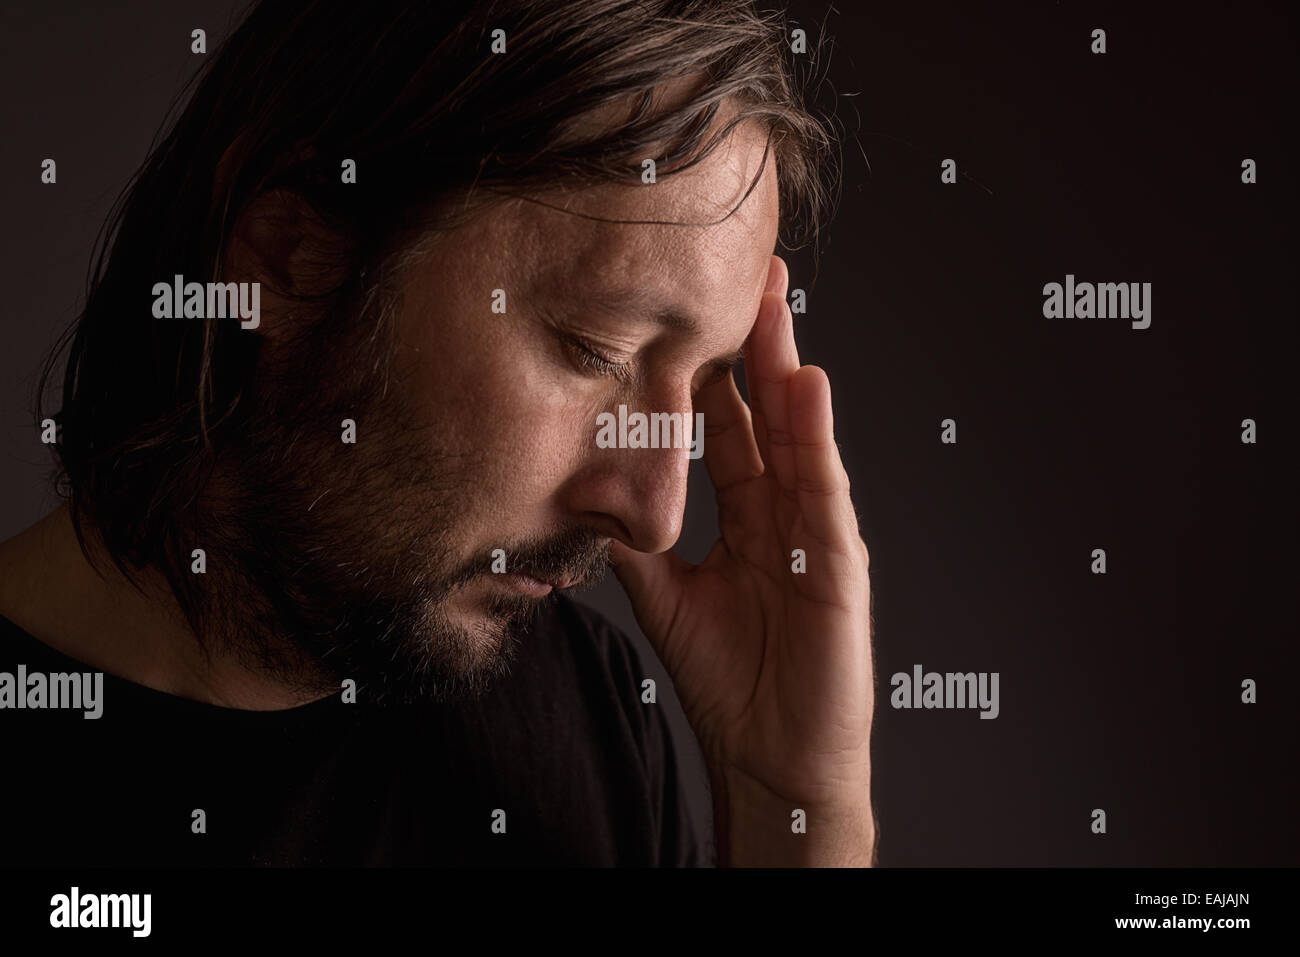 Bearded adult man with migraine headache, low key portrait Stock Photo